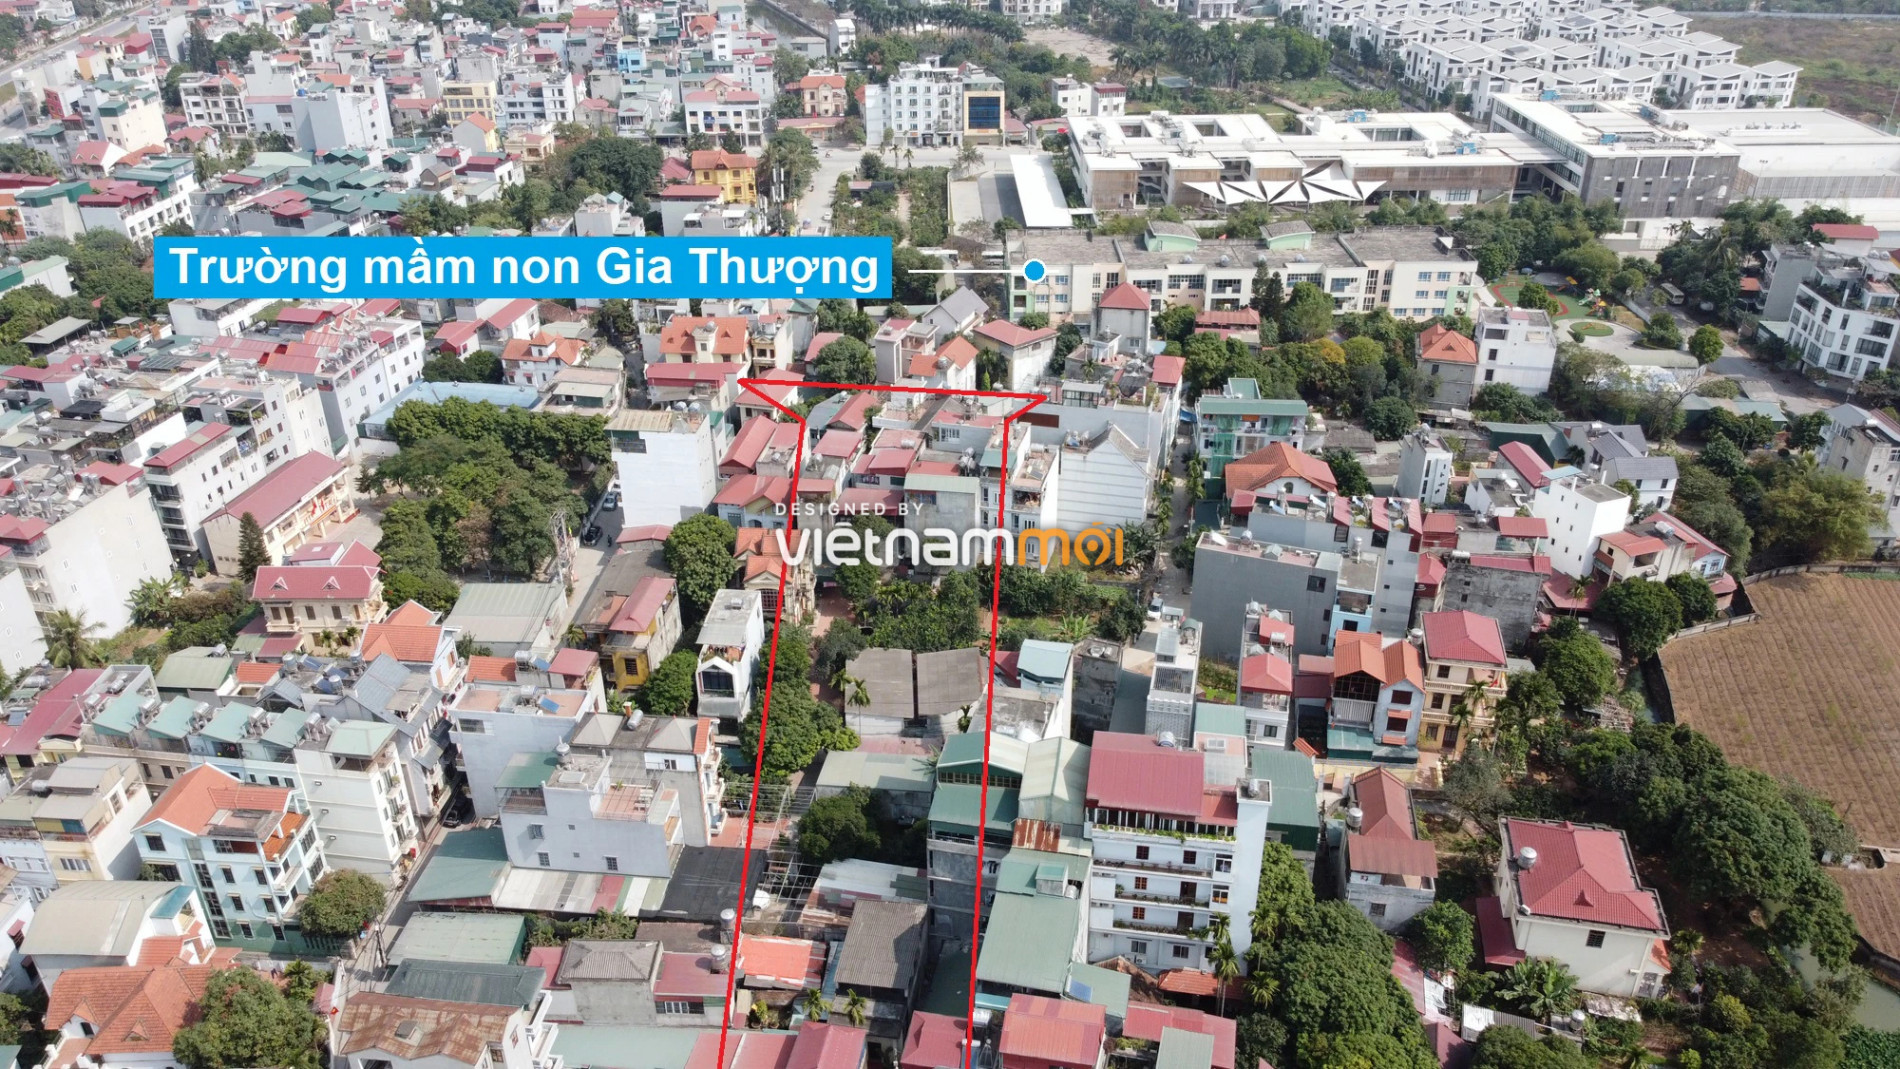 Những khu đất sắp thu hồi để mở đường ở phường Ngọc Thụy, Long Biên, Hà Nội (phần 3) - Ảnh 6.